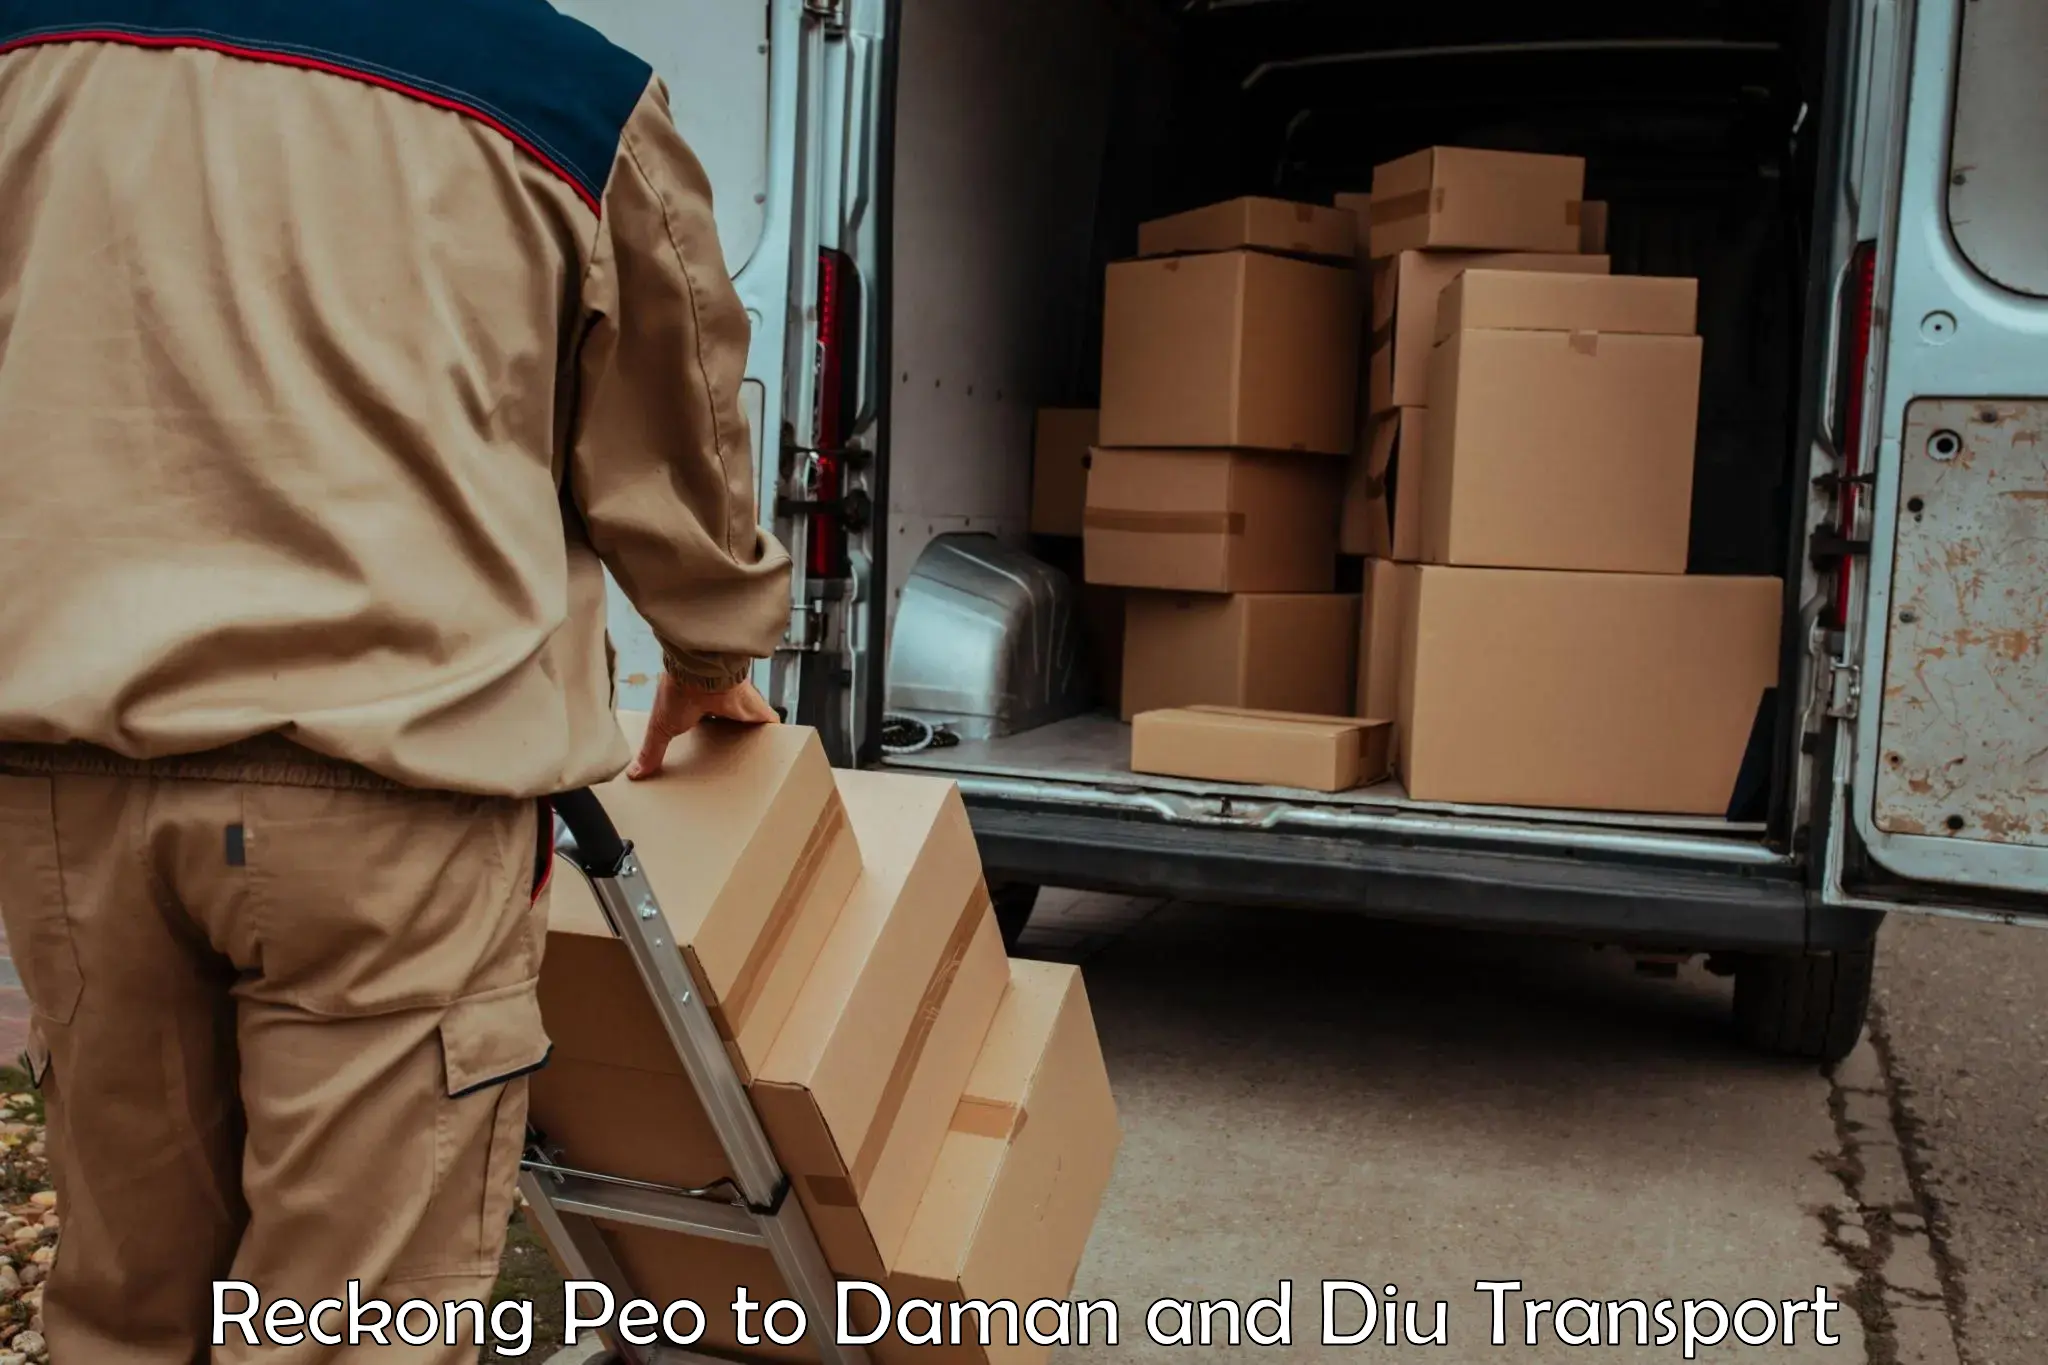 Lorry transport service Reckong Peo to Diu